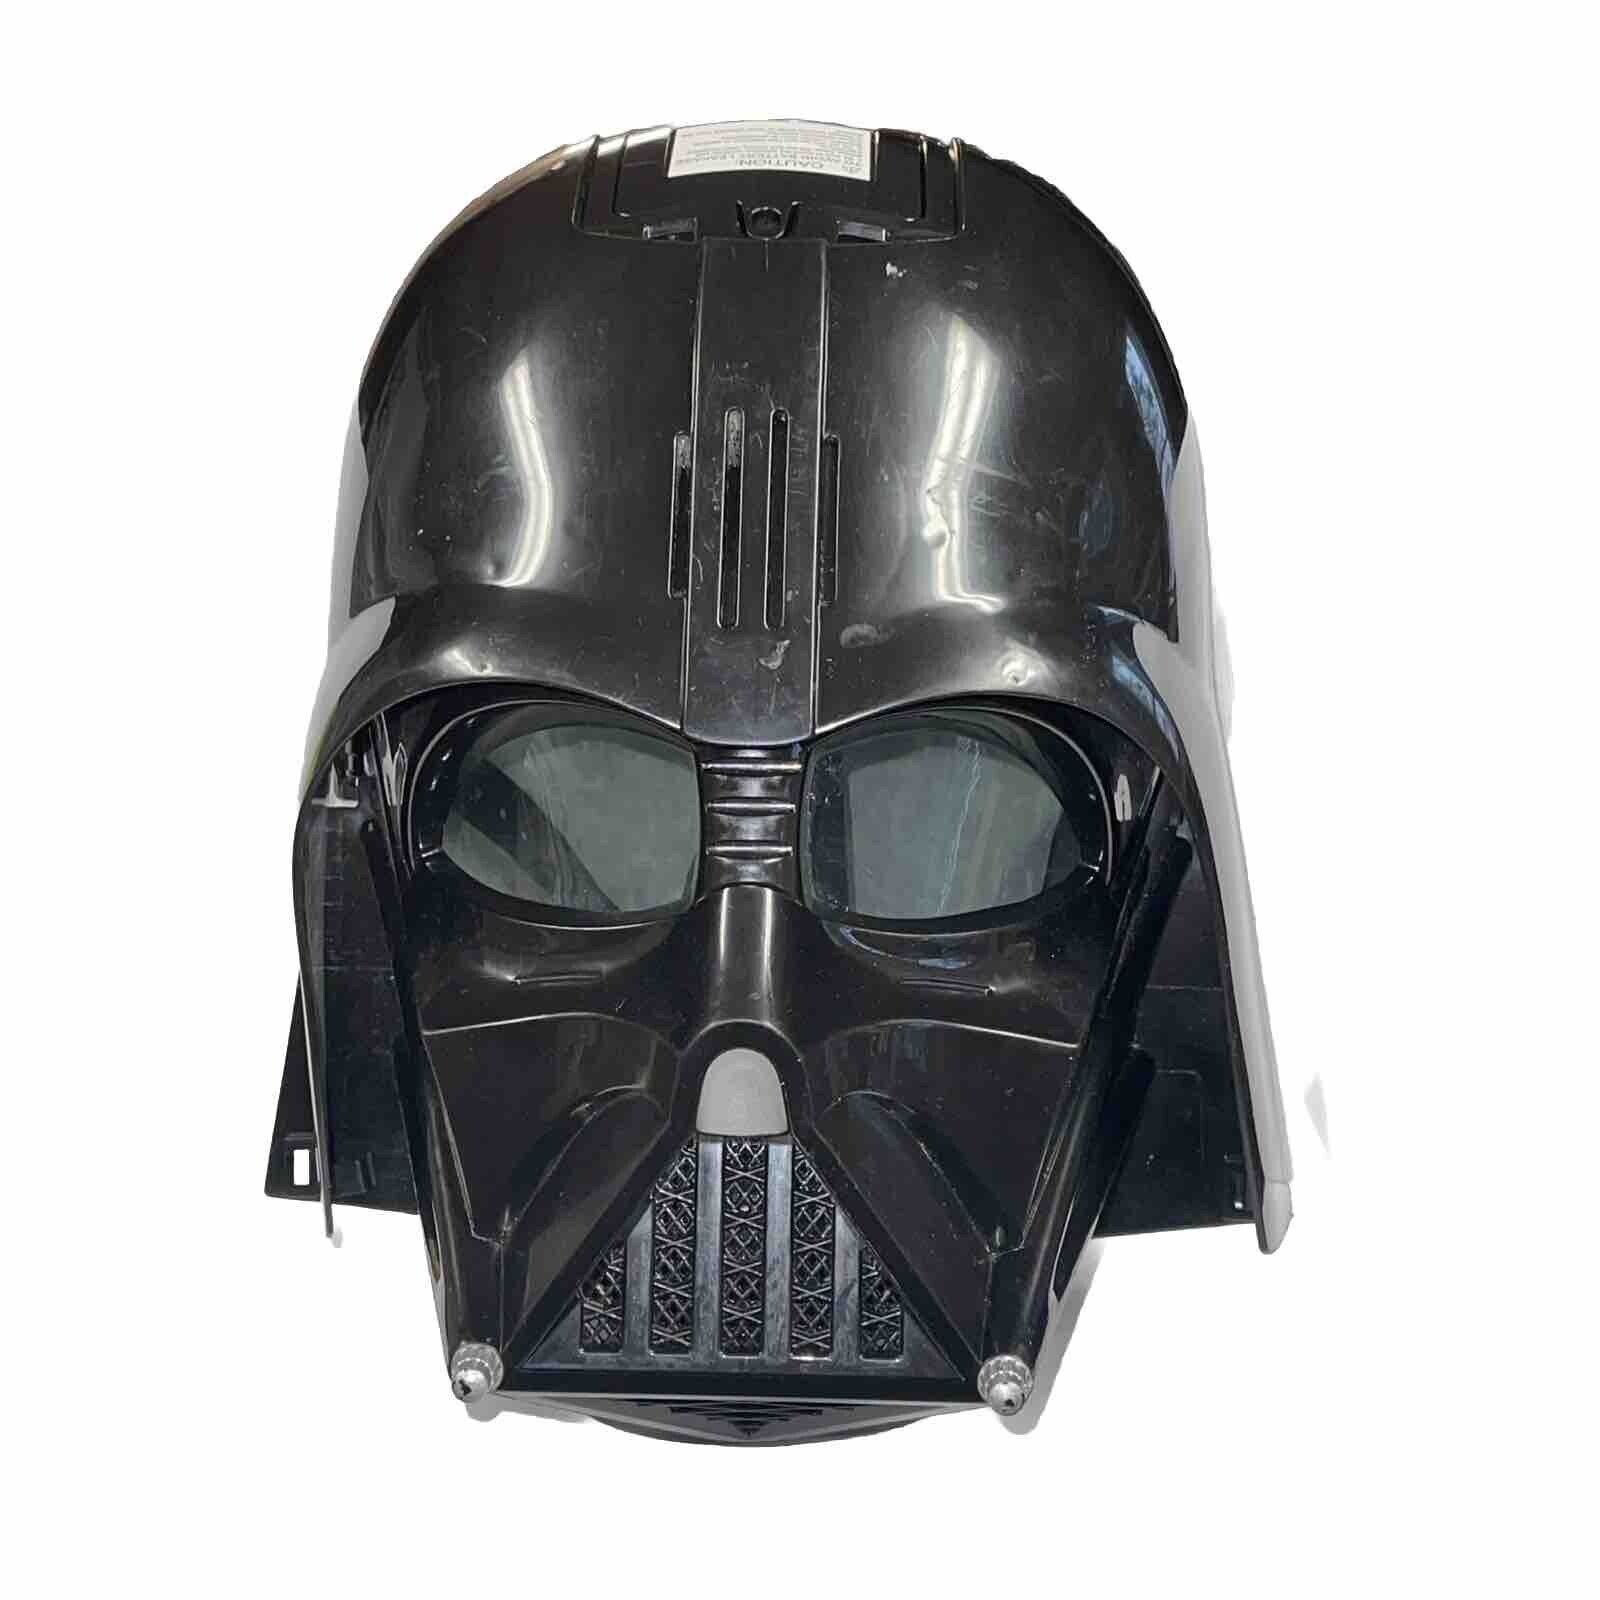 2013 Hasbro Star Wars DARTH VADER Talking Voice Helmet Mask-Works